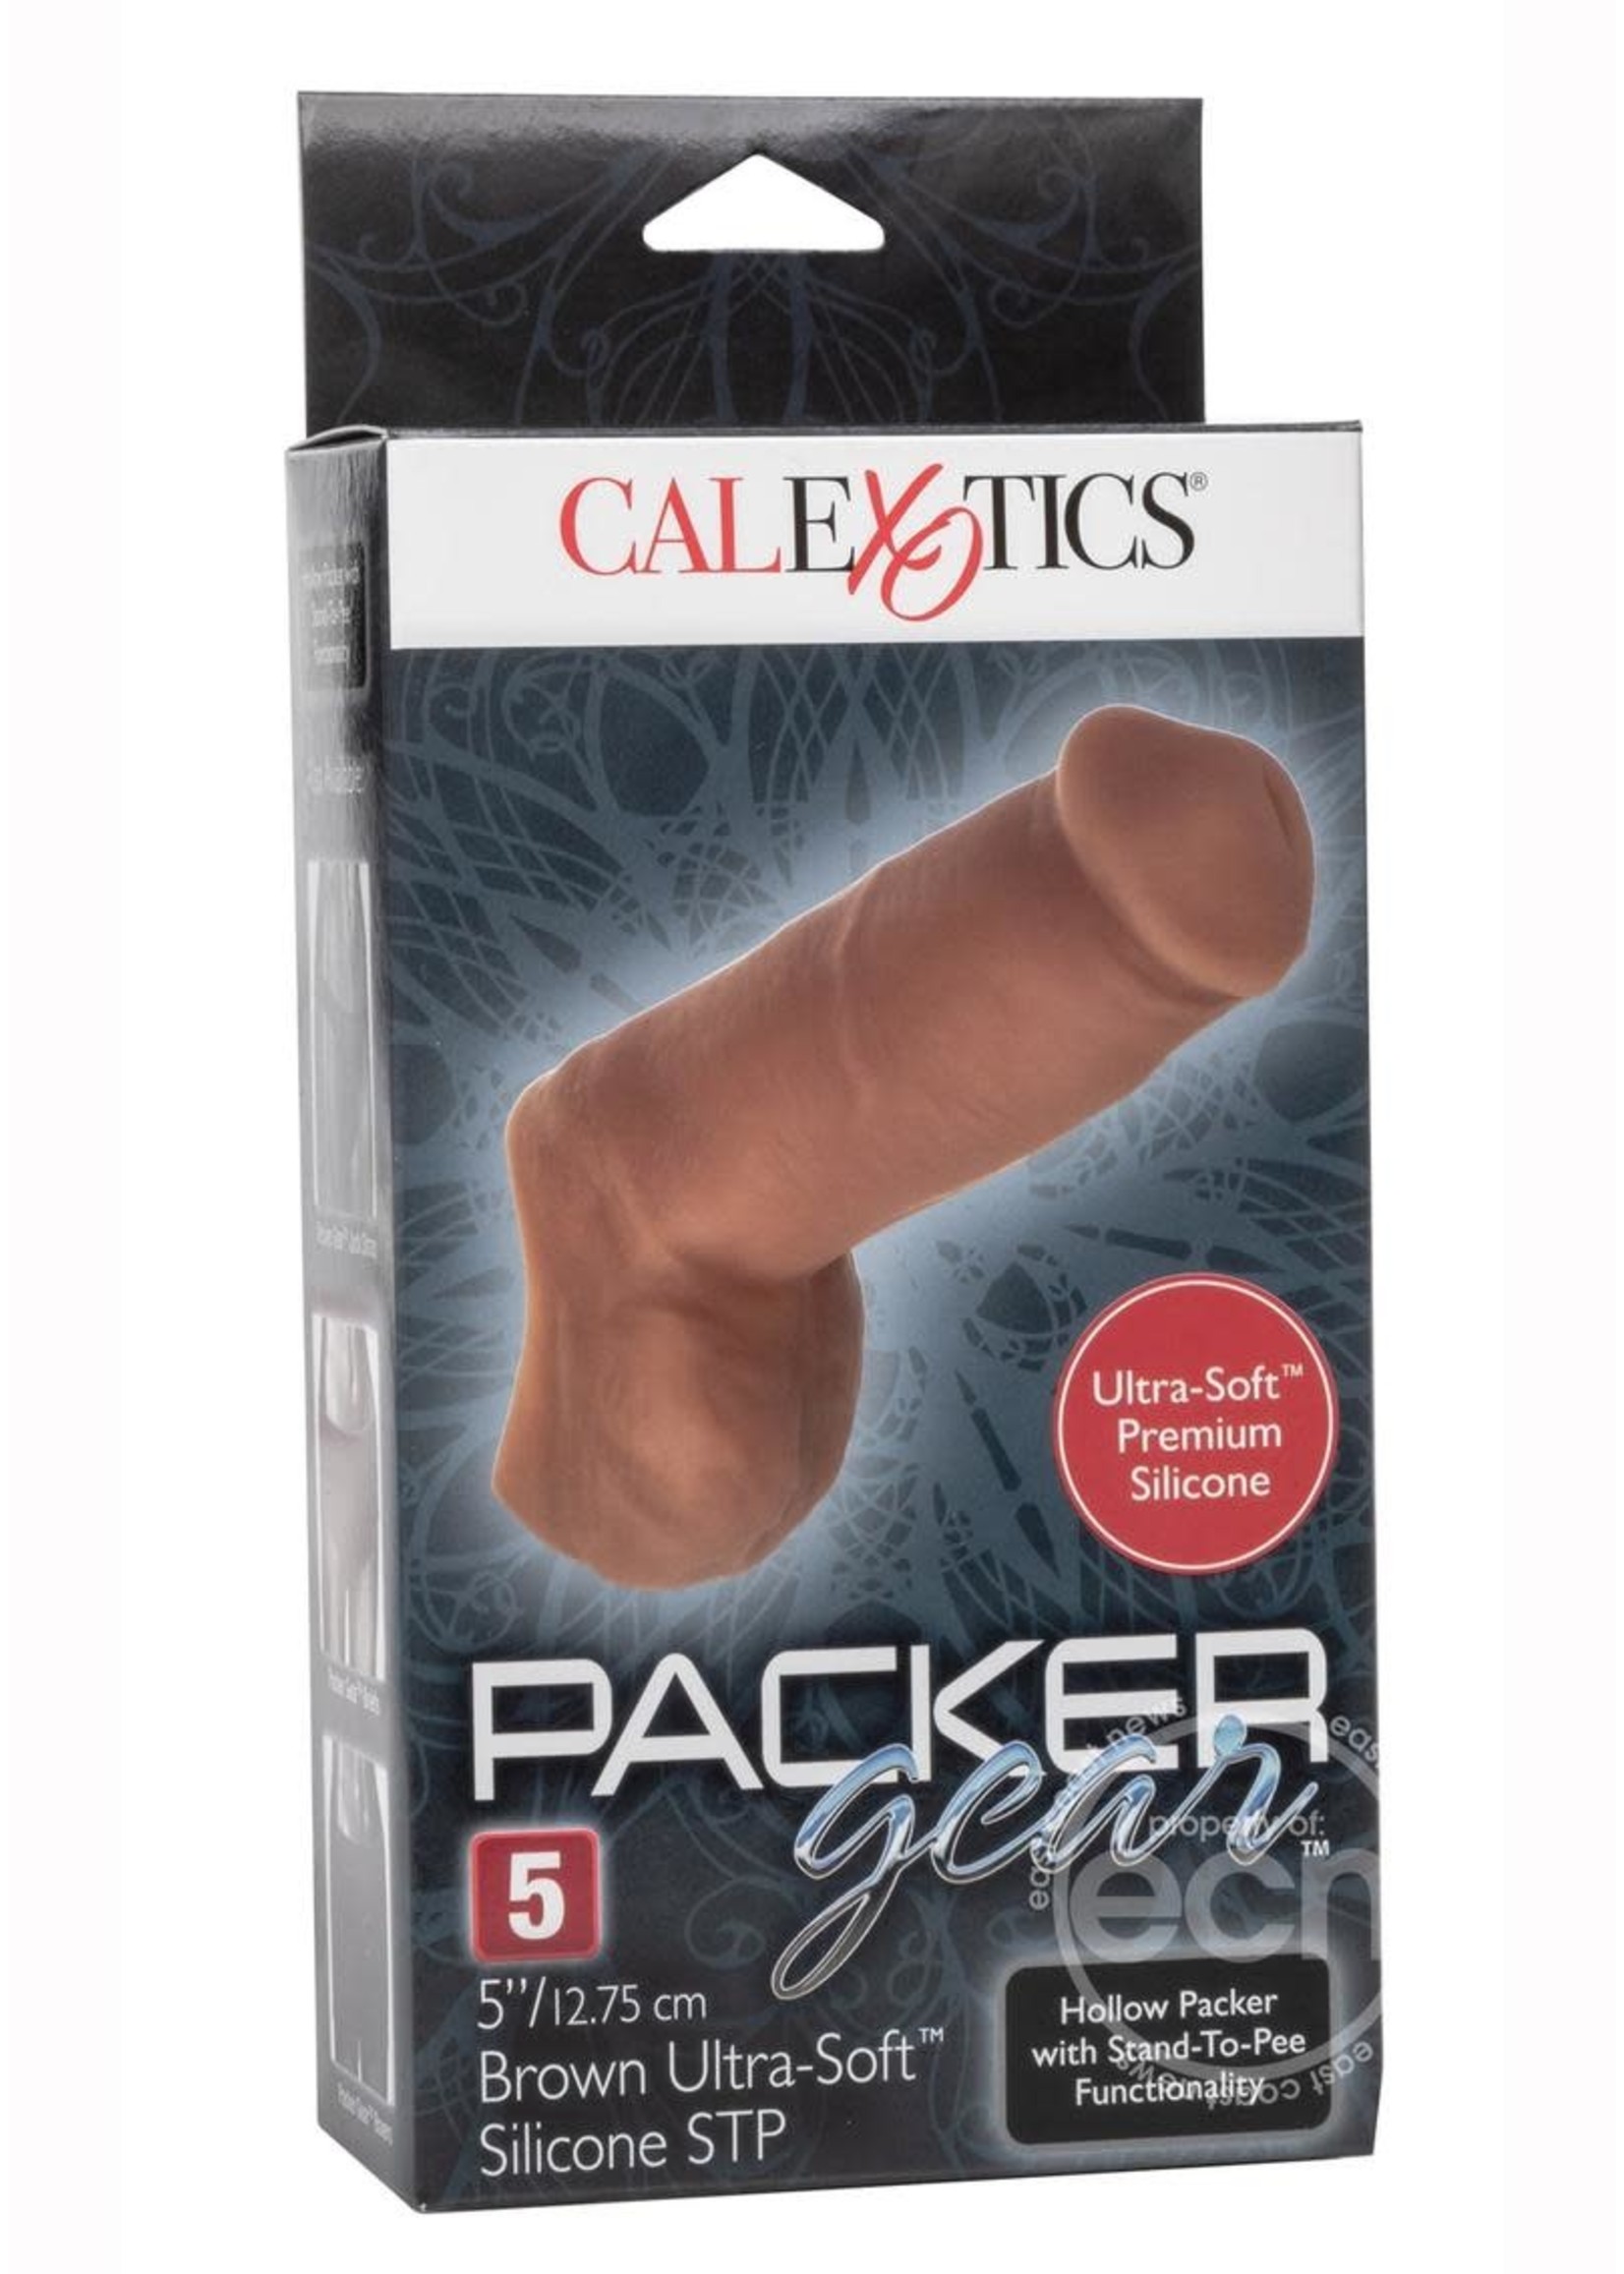 CalExotics Packer Gear Ultra-Soft Hollow Packer 5in